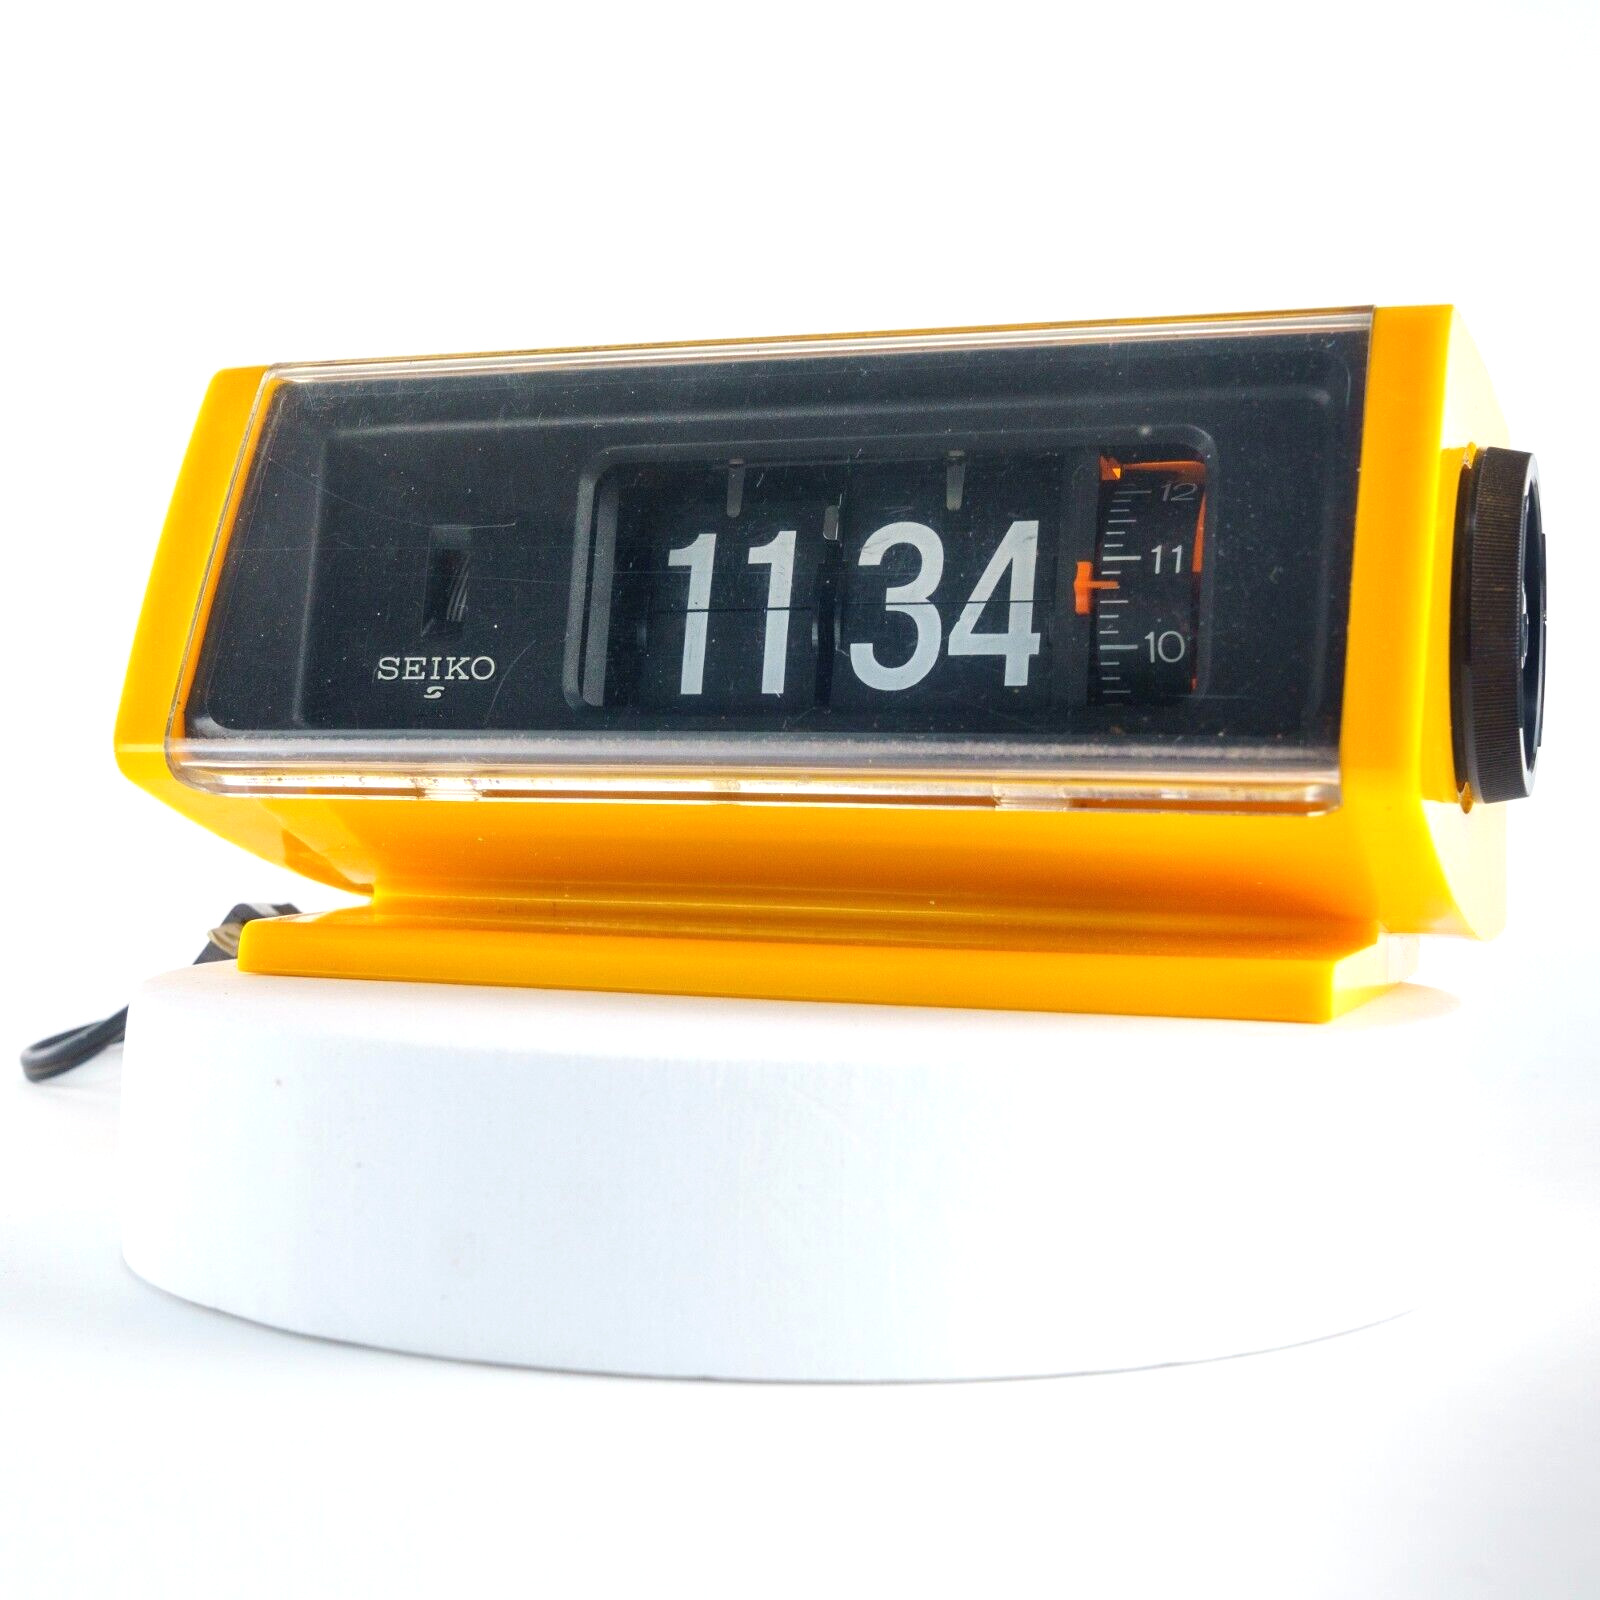 SE|KO Flip Alarm Clock DP-680 Yellow Body Space age Vintage No alarm #1026